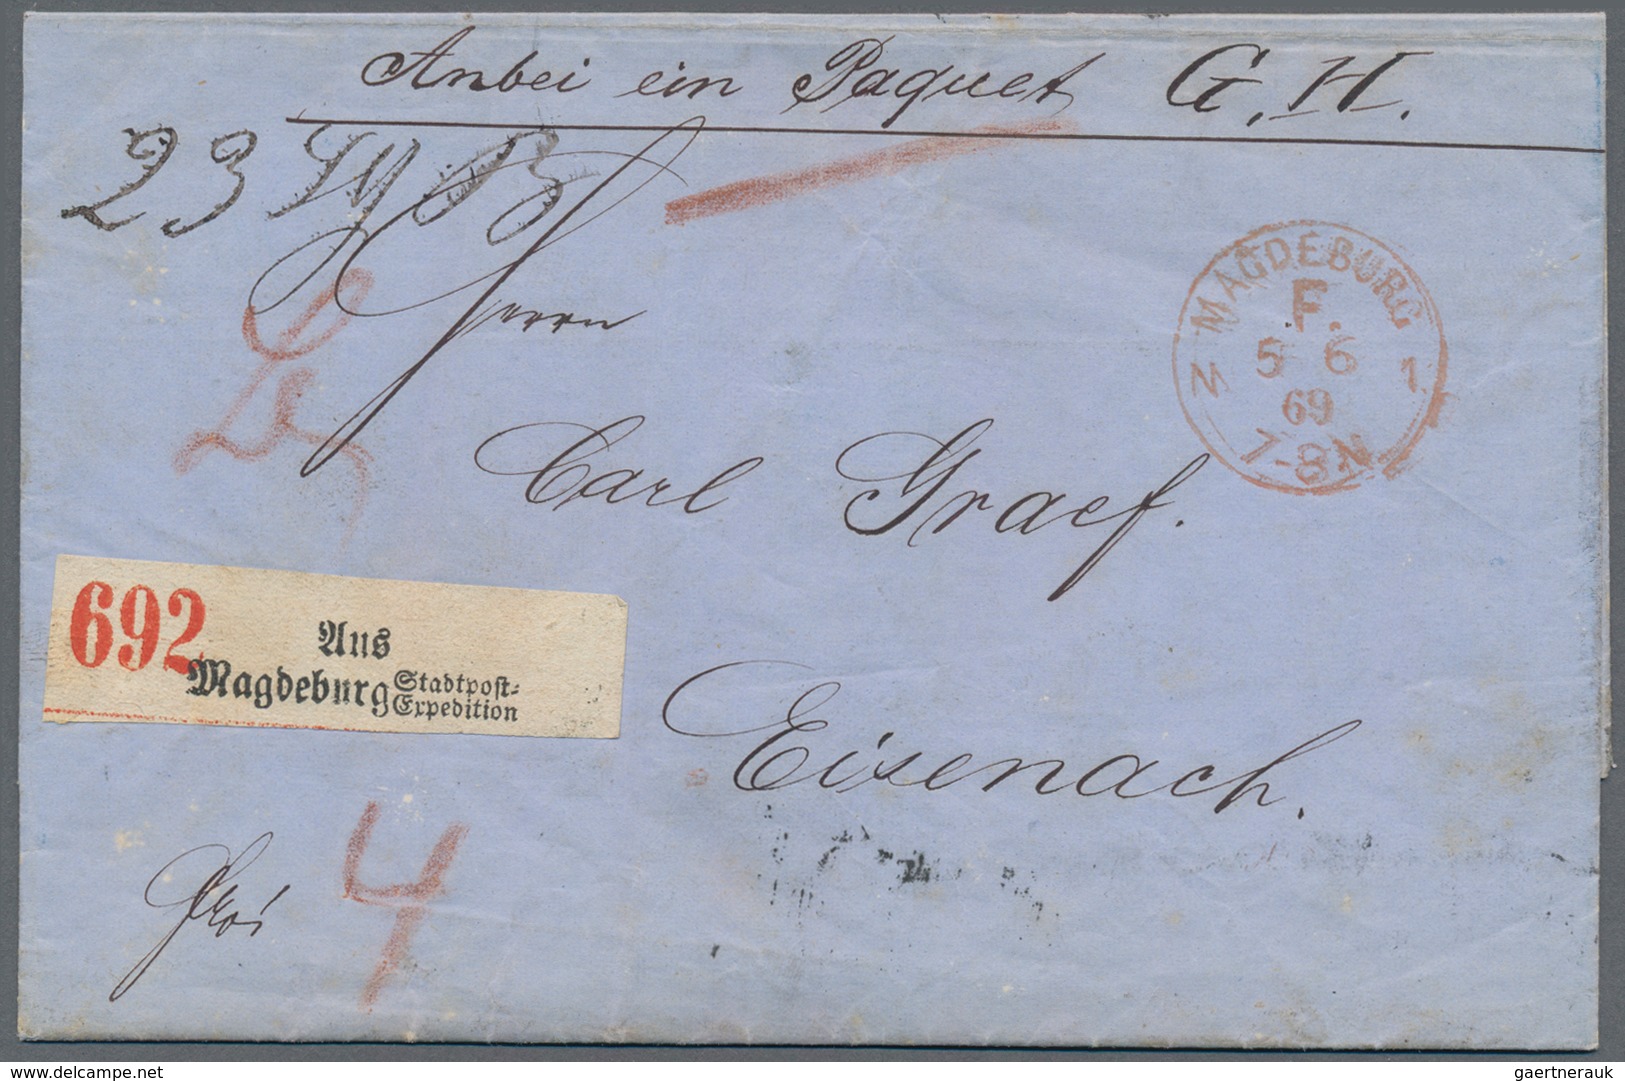 Norddeutscher Bund - Marken und Briefe: 1868/1871, Partie von 23 Briefen und Karten, dabei Bahnpost